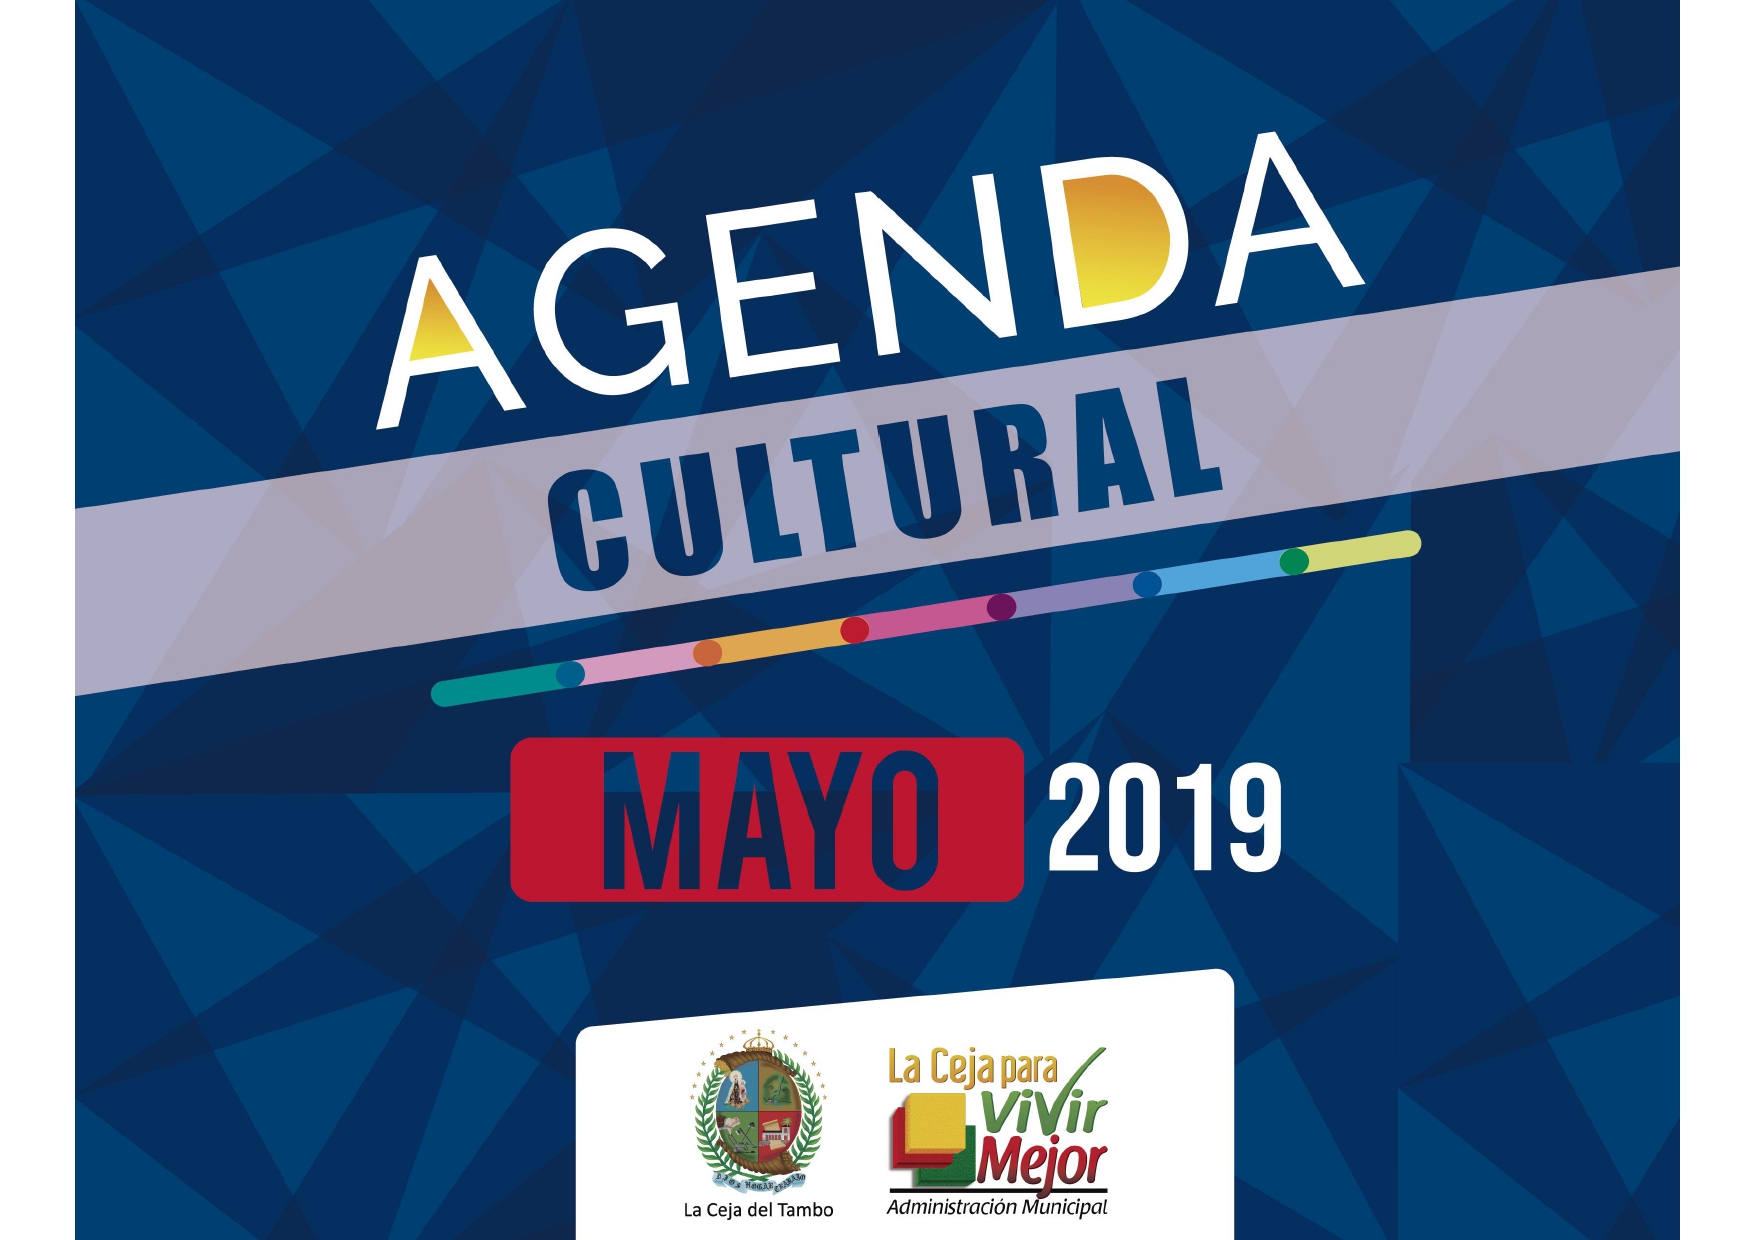 Agenda Cultural de Mayo page 0001 1